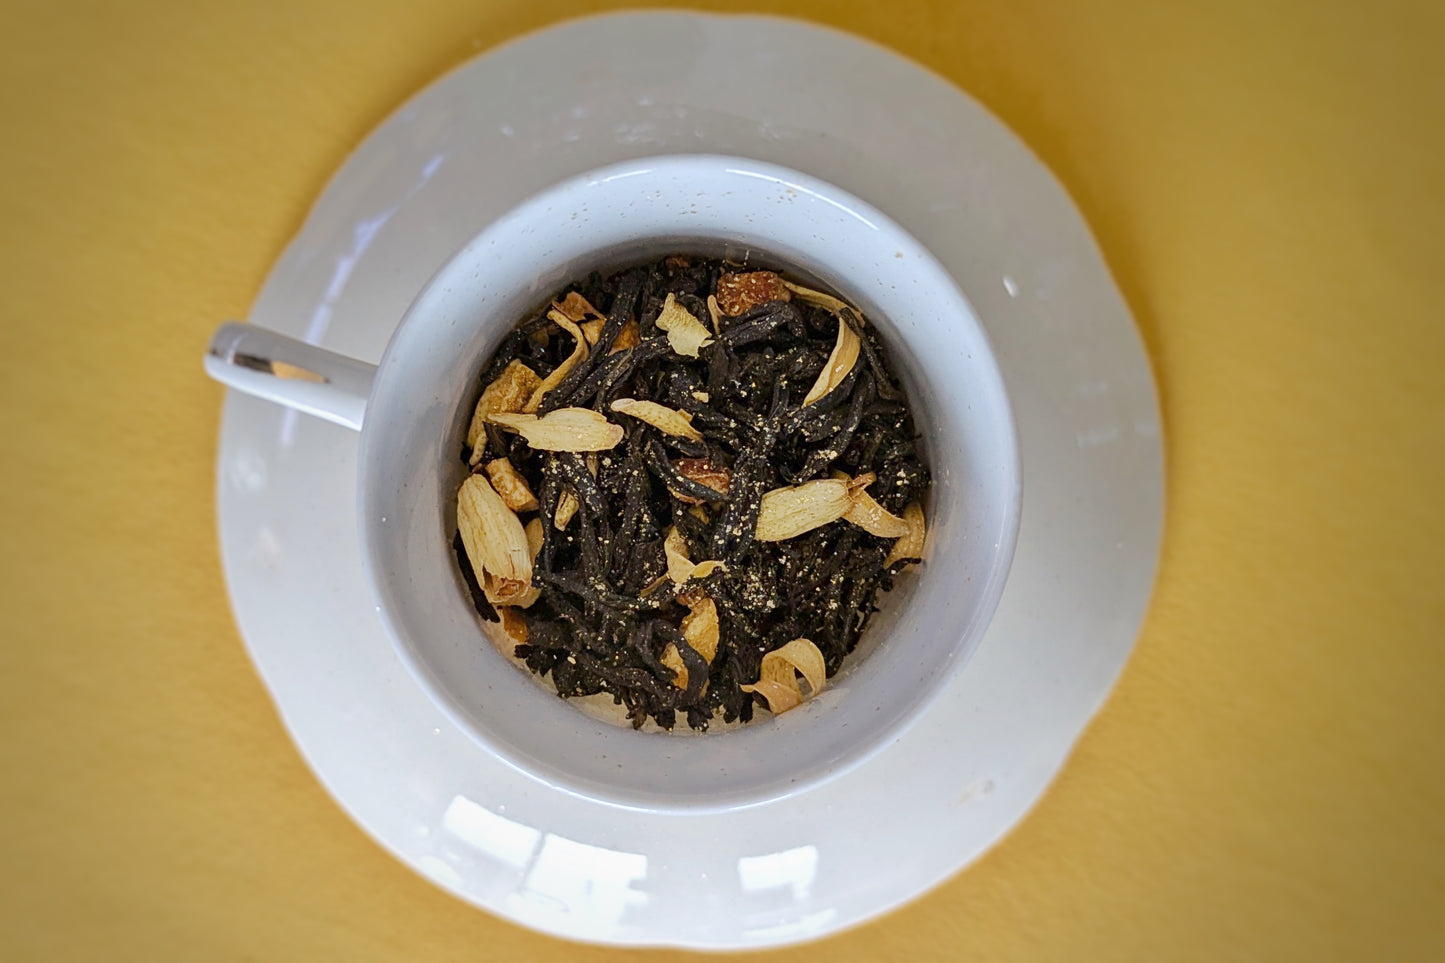 teacup full of black tea and orange blossom petal